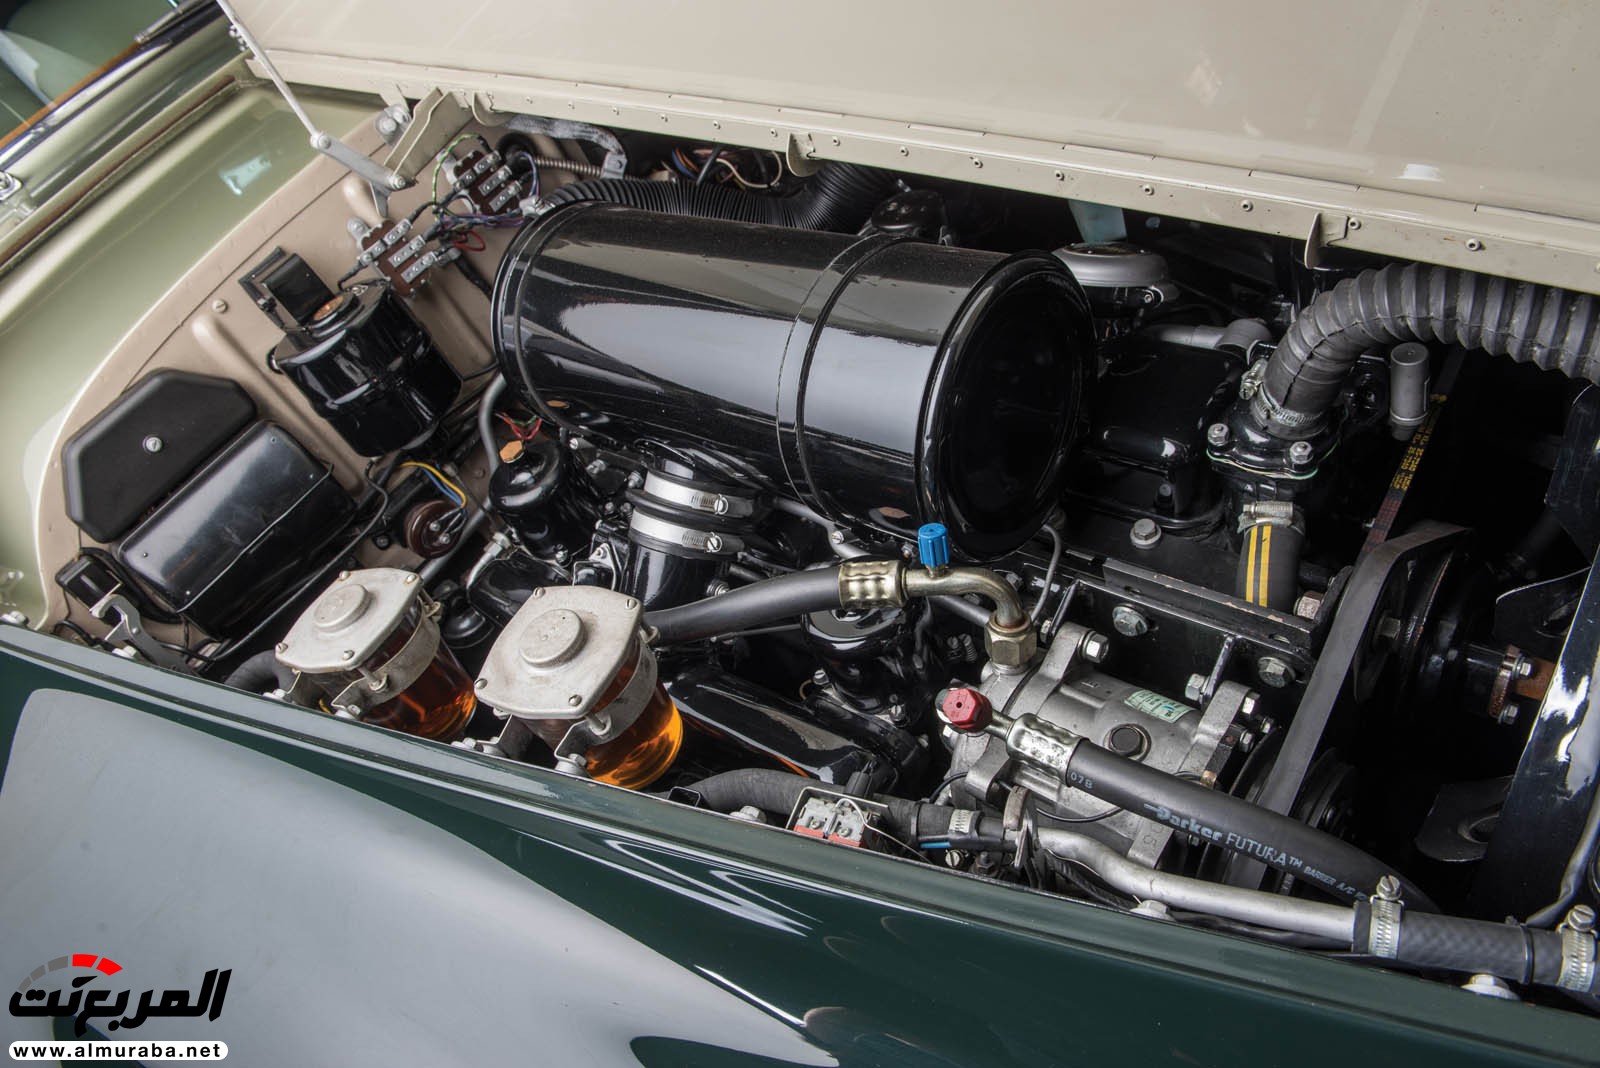 "رولز رويس" سيلفر كلاود 1959 ذات هيكلة الواجن تتوجه لتباع في مزاد عالمي Rolls-Royce Silver Cloud 92